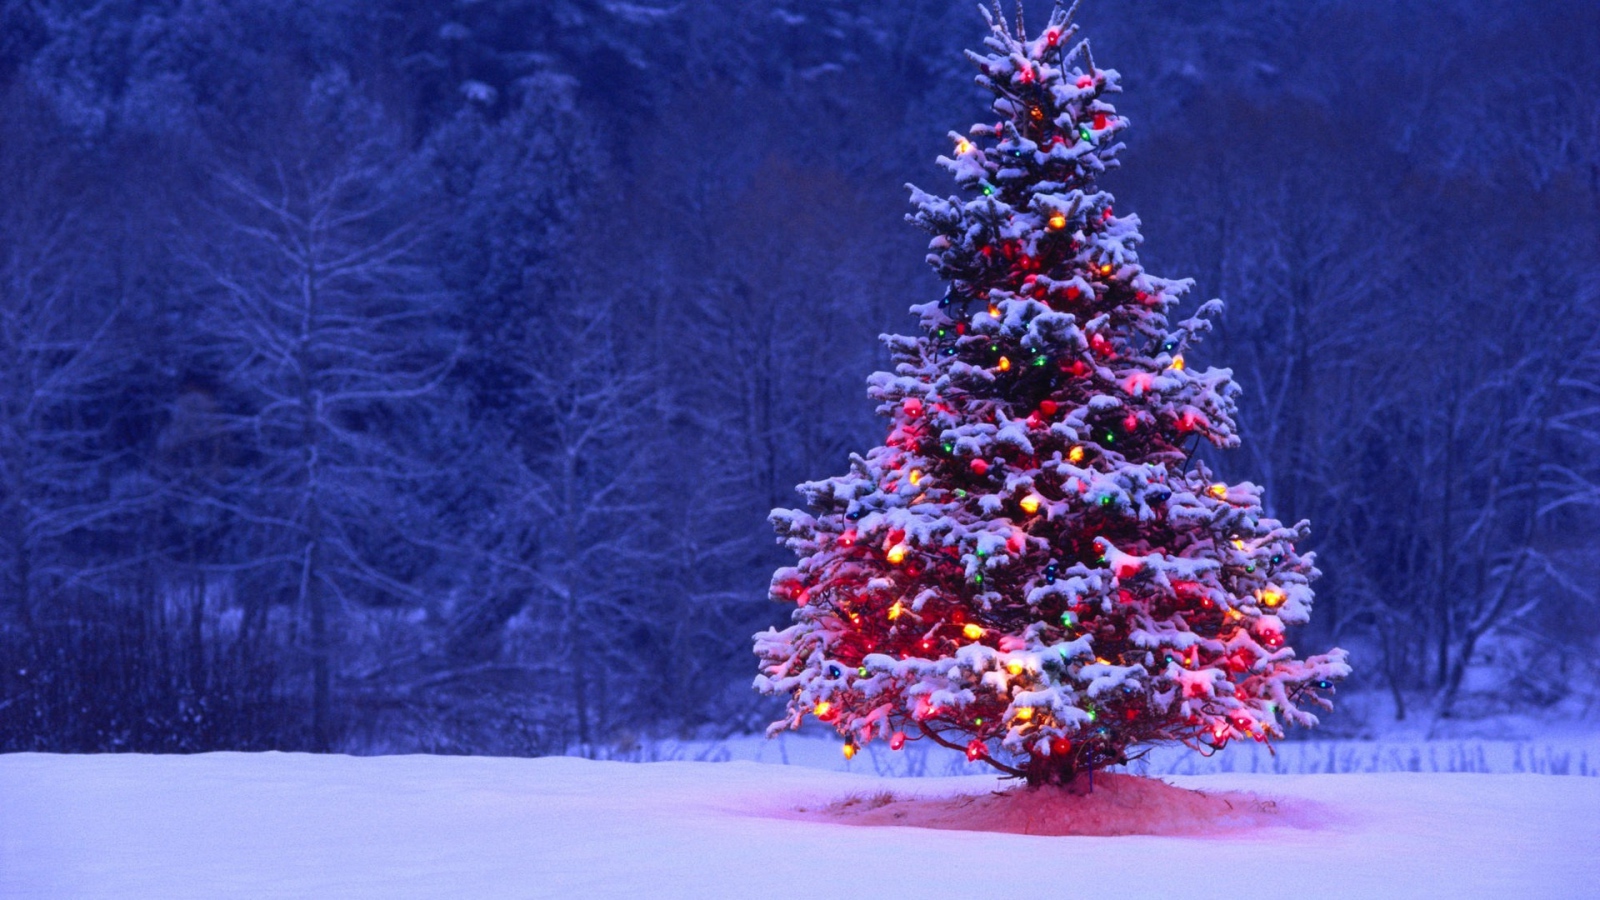 Cây thông Giáng Sinh đơn lẻ trên đồng cỏ tuyệt đẹp đây sẽ là gợi ý tuyệt vời cho bạn nếu bạn đang tìm kiếm một bức hình nền tuyệt đẹp và ấm áp. Tưởng tượng bạn lành lạnh trong không khí se lạnh của đêm Noel và trước mắt là một cây thông cô đơn, ngọn đèn bật sáng vì tình yêu dành cho Giáng Sinh.